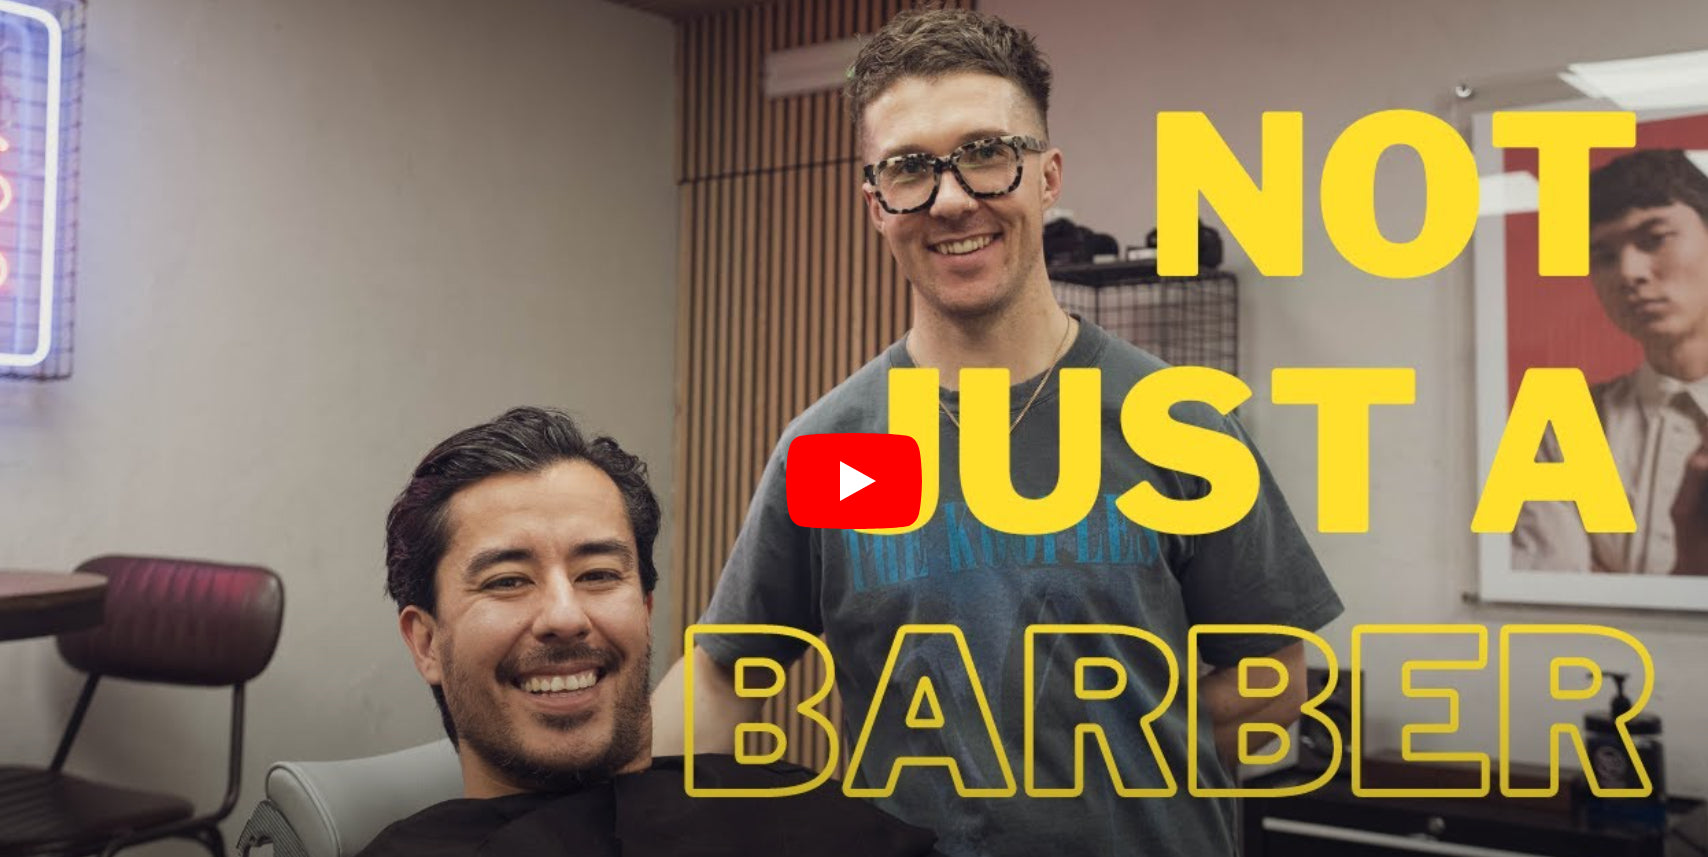 Vídeo: Not Just a Barber Episódio 3 - Elliot Forbes